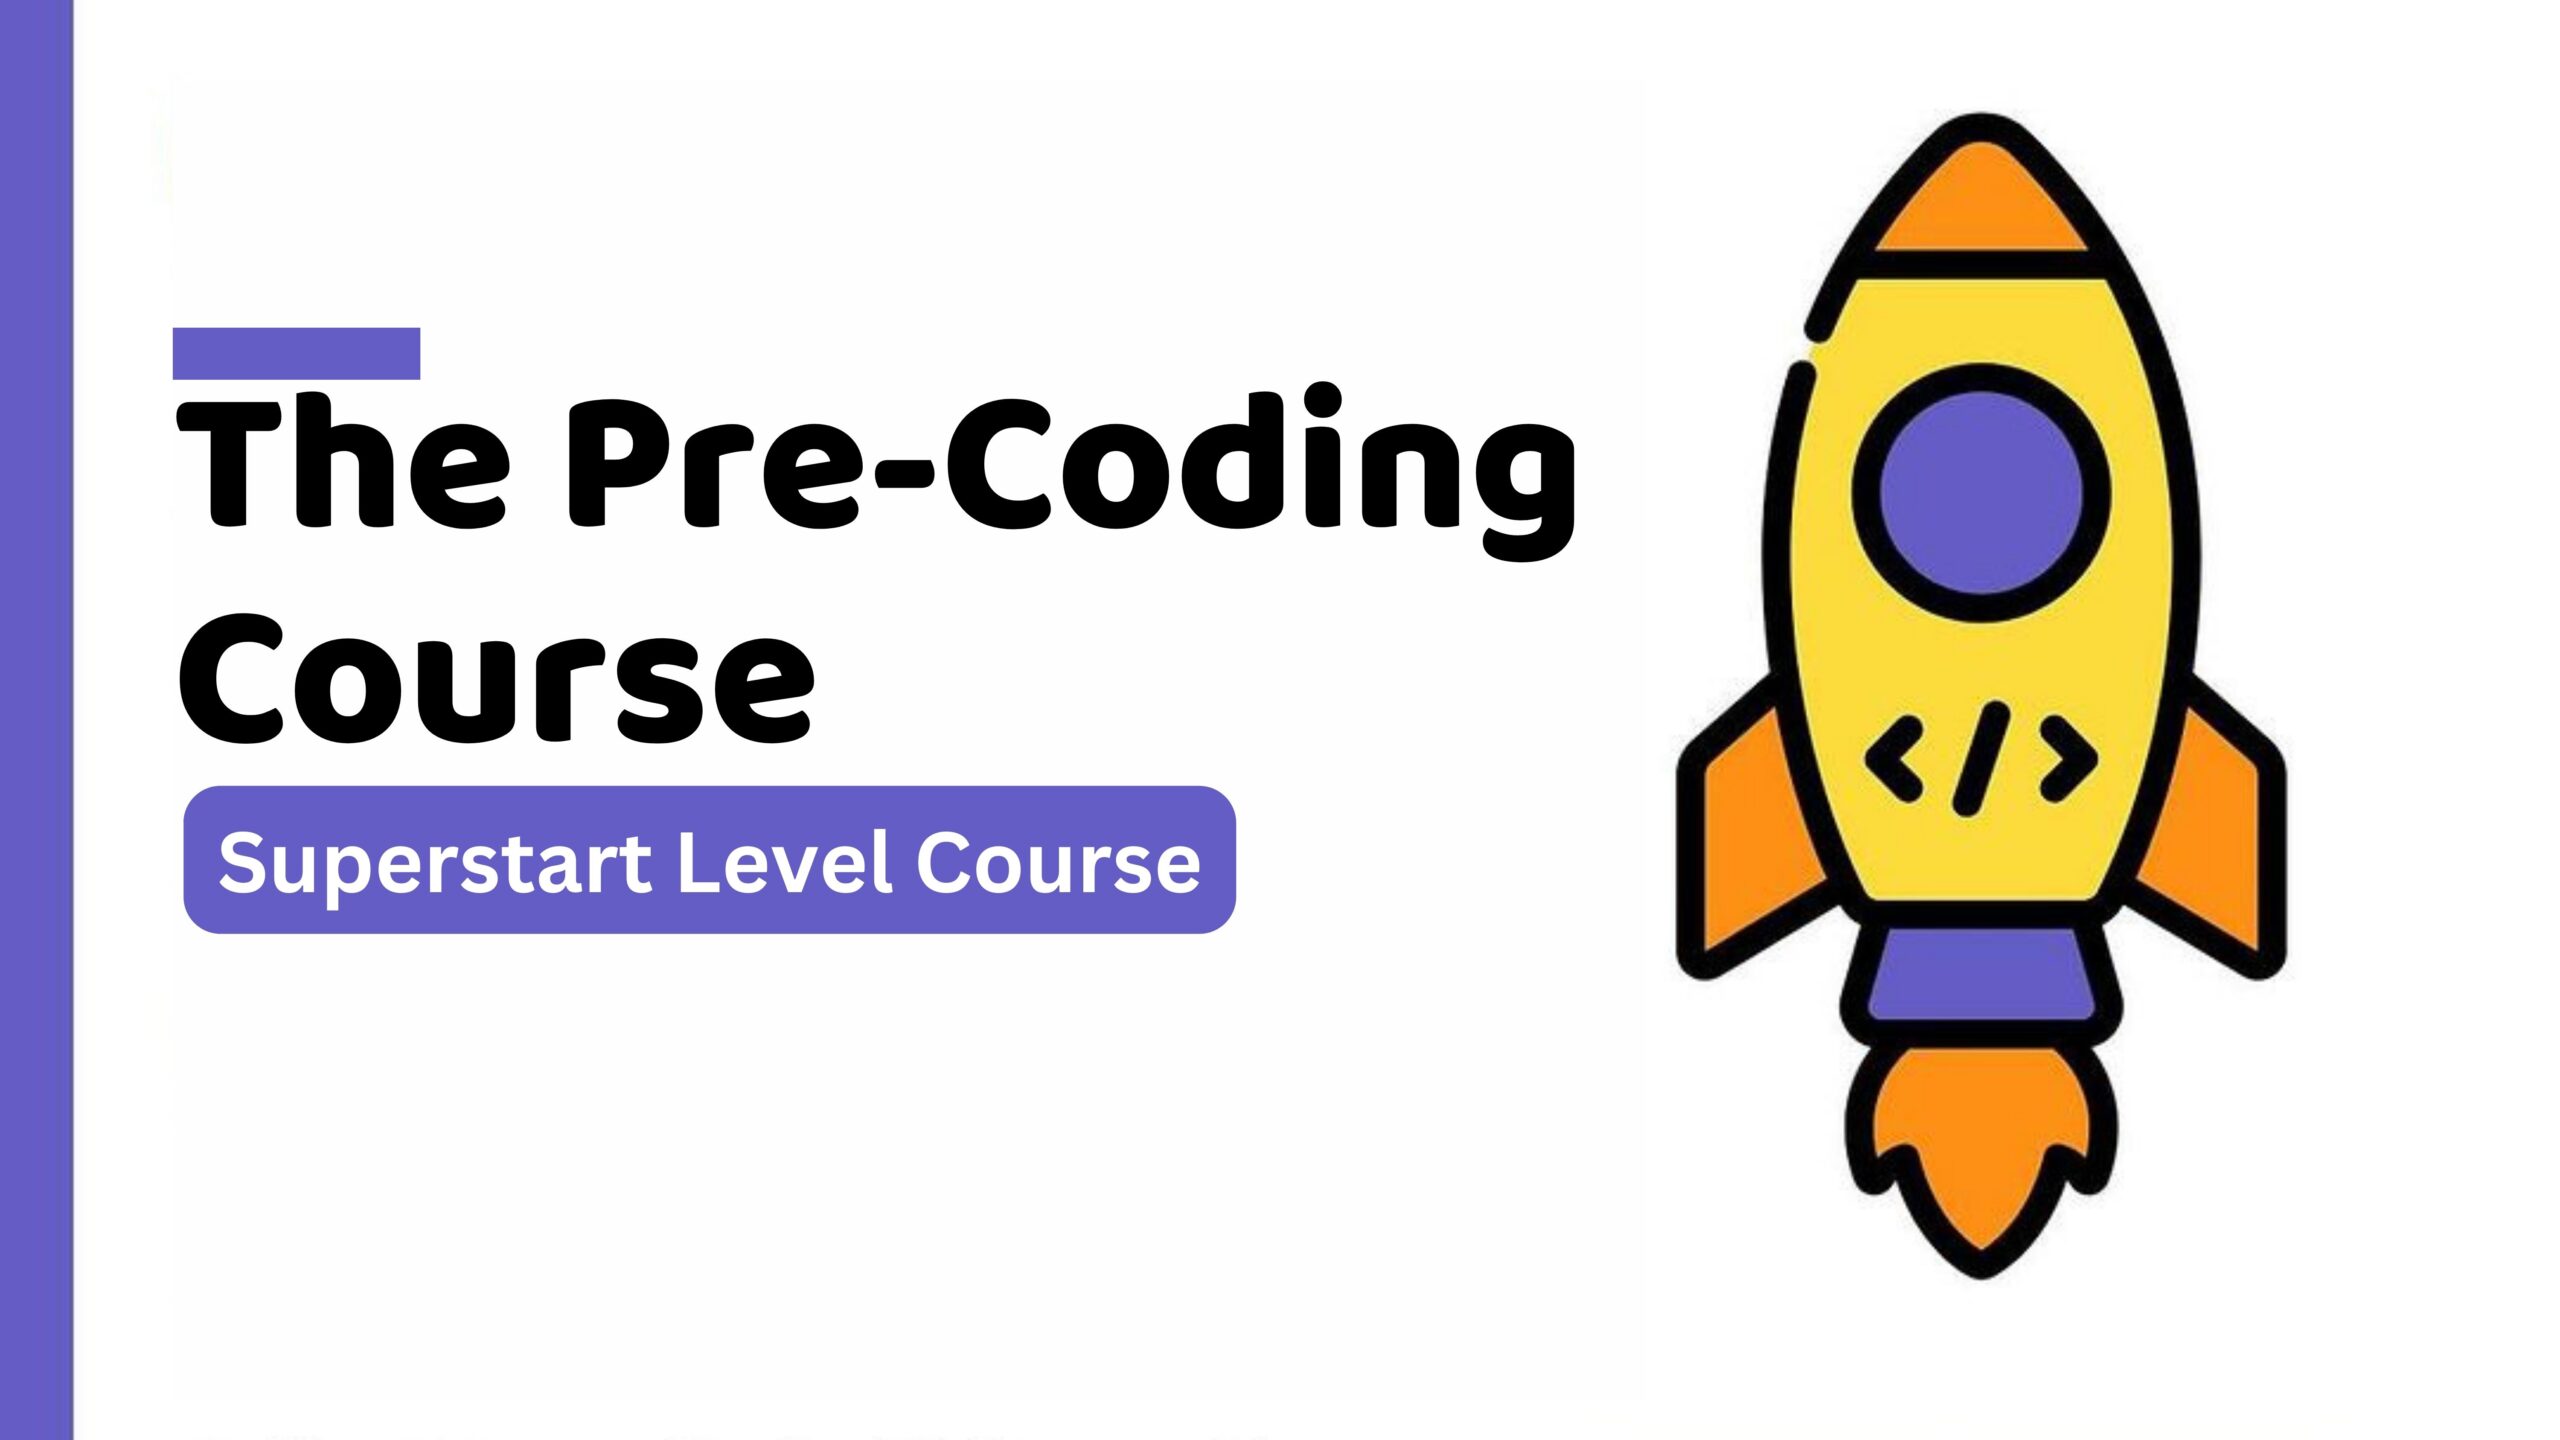 The Pre-Coding Course